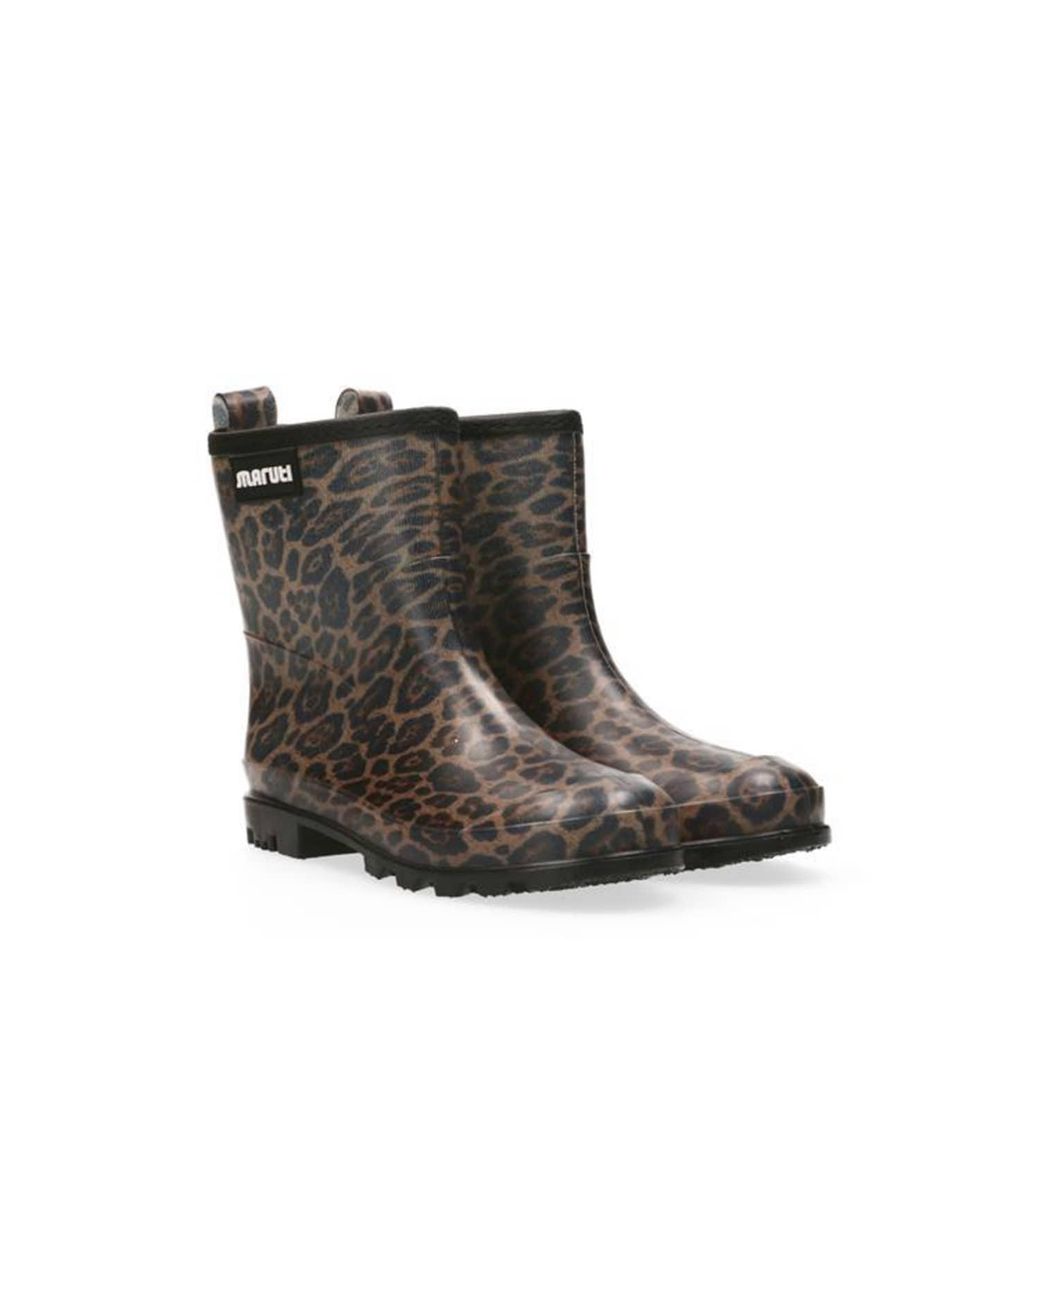 Maruti Skyler Rubber Rain Boots Leopard Beige in Brown | Lyst